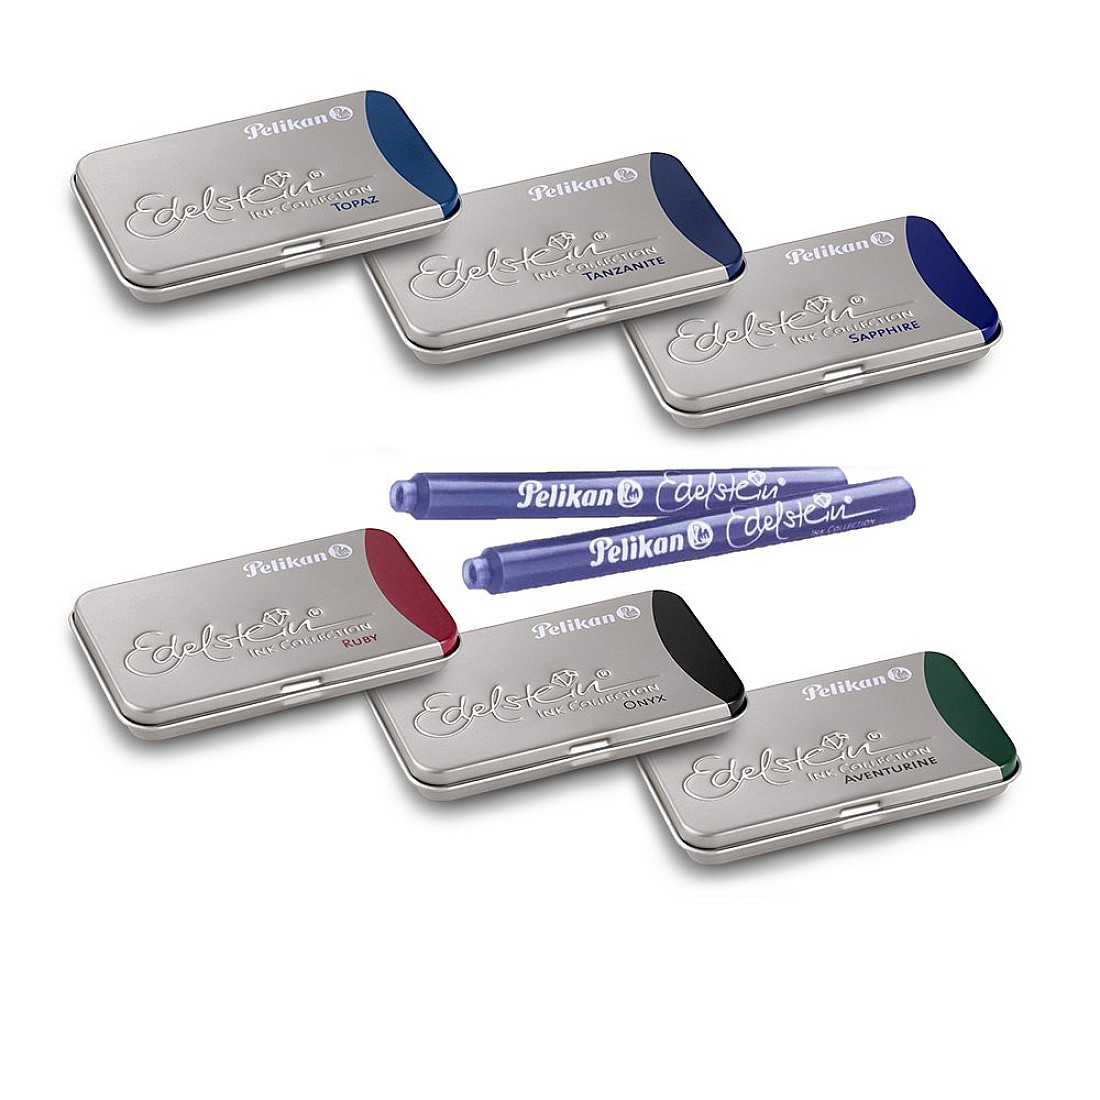 levenslang tekort bedenken Pelikan Edelstein Ink - Ink Cartridges (6 colors) | Appelboom.com